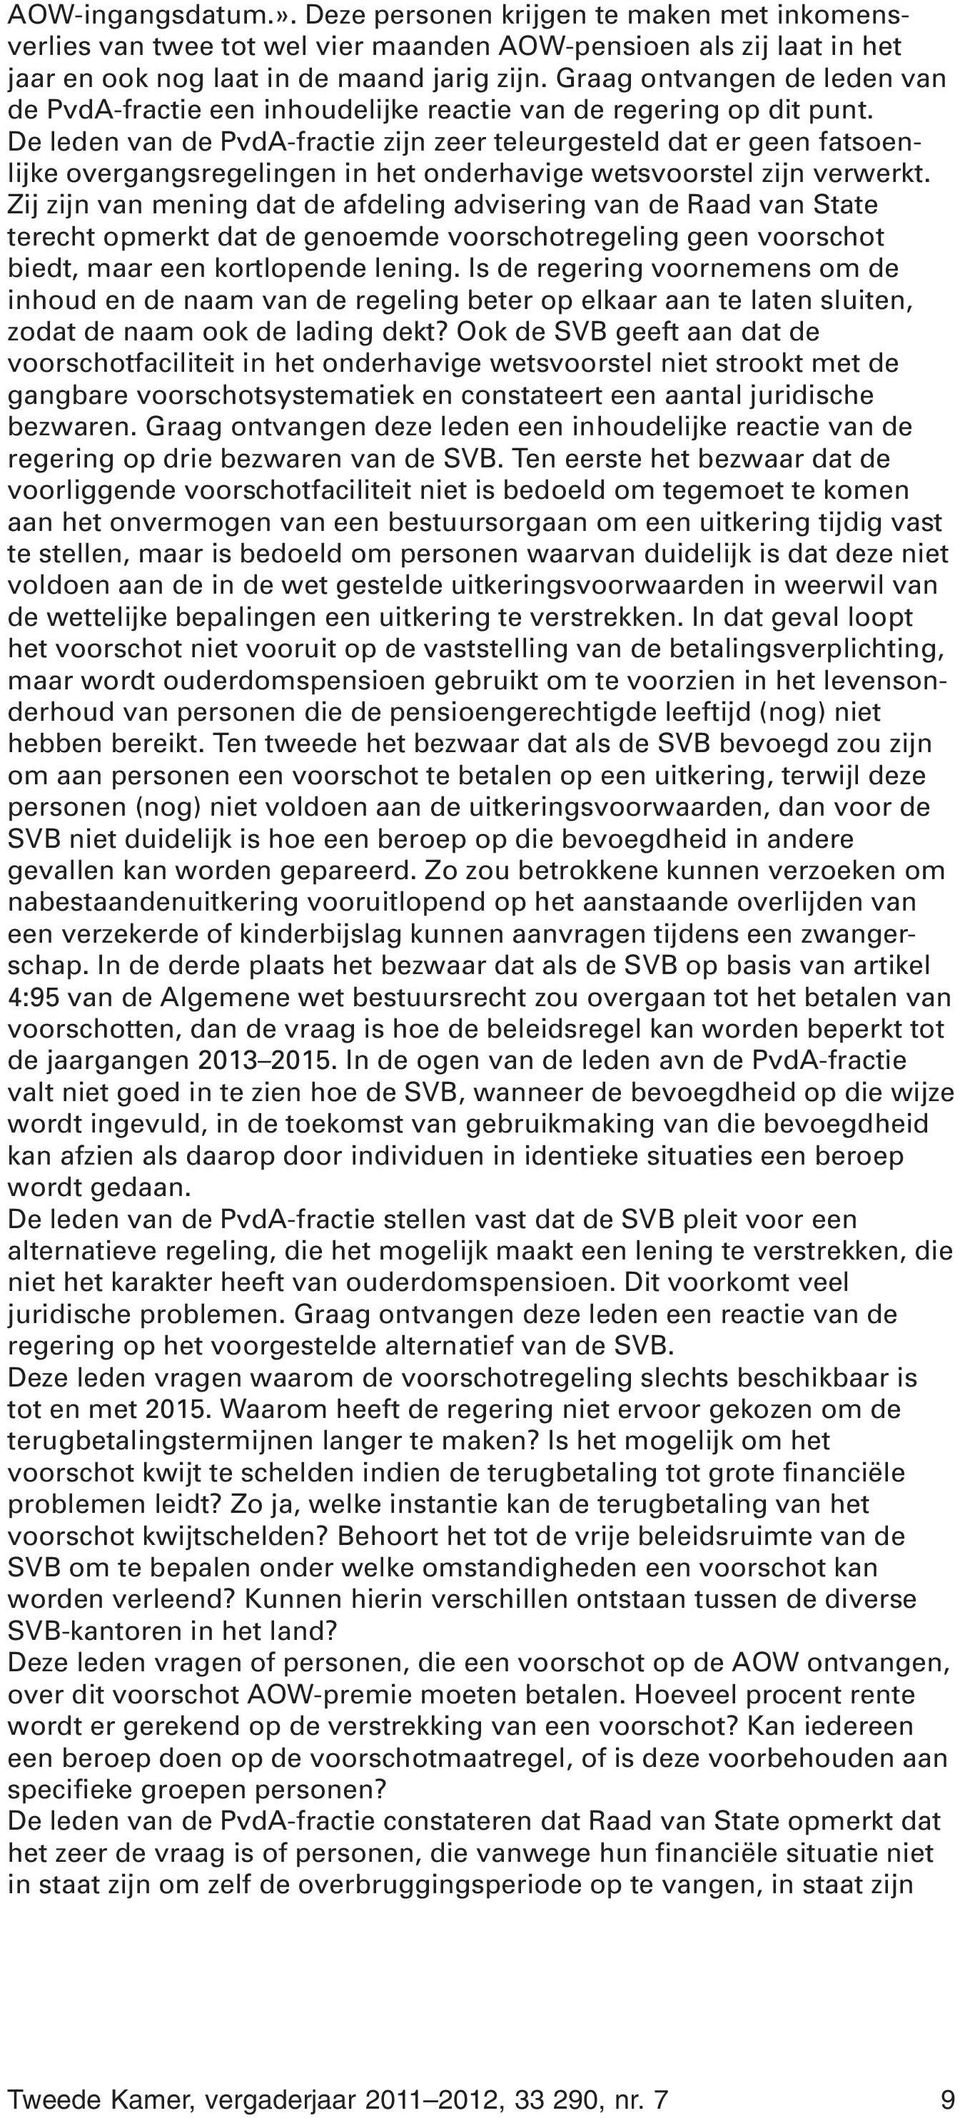 De leden van de PvdA-fractie zijn zeer teleurgesteld dat er geen fatsoenlijke overgangsregelingen in het onderhavige wetsvoorstel zijn verwerkt.